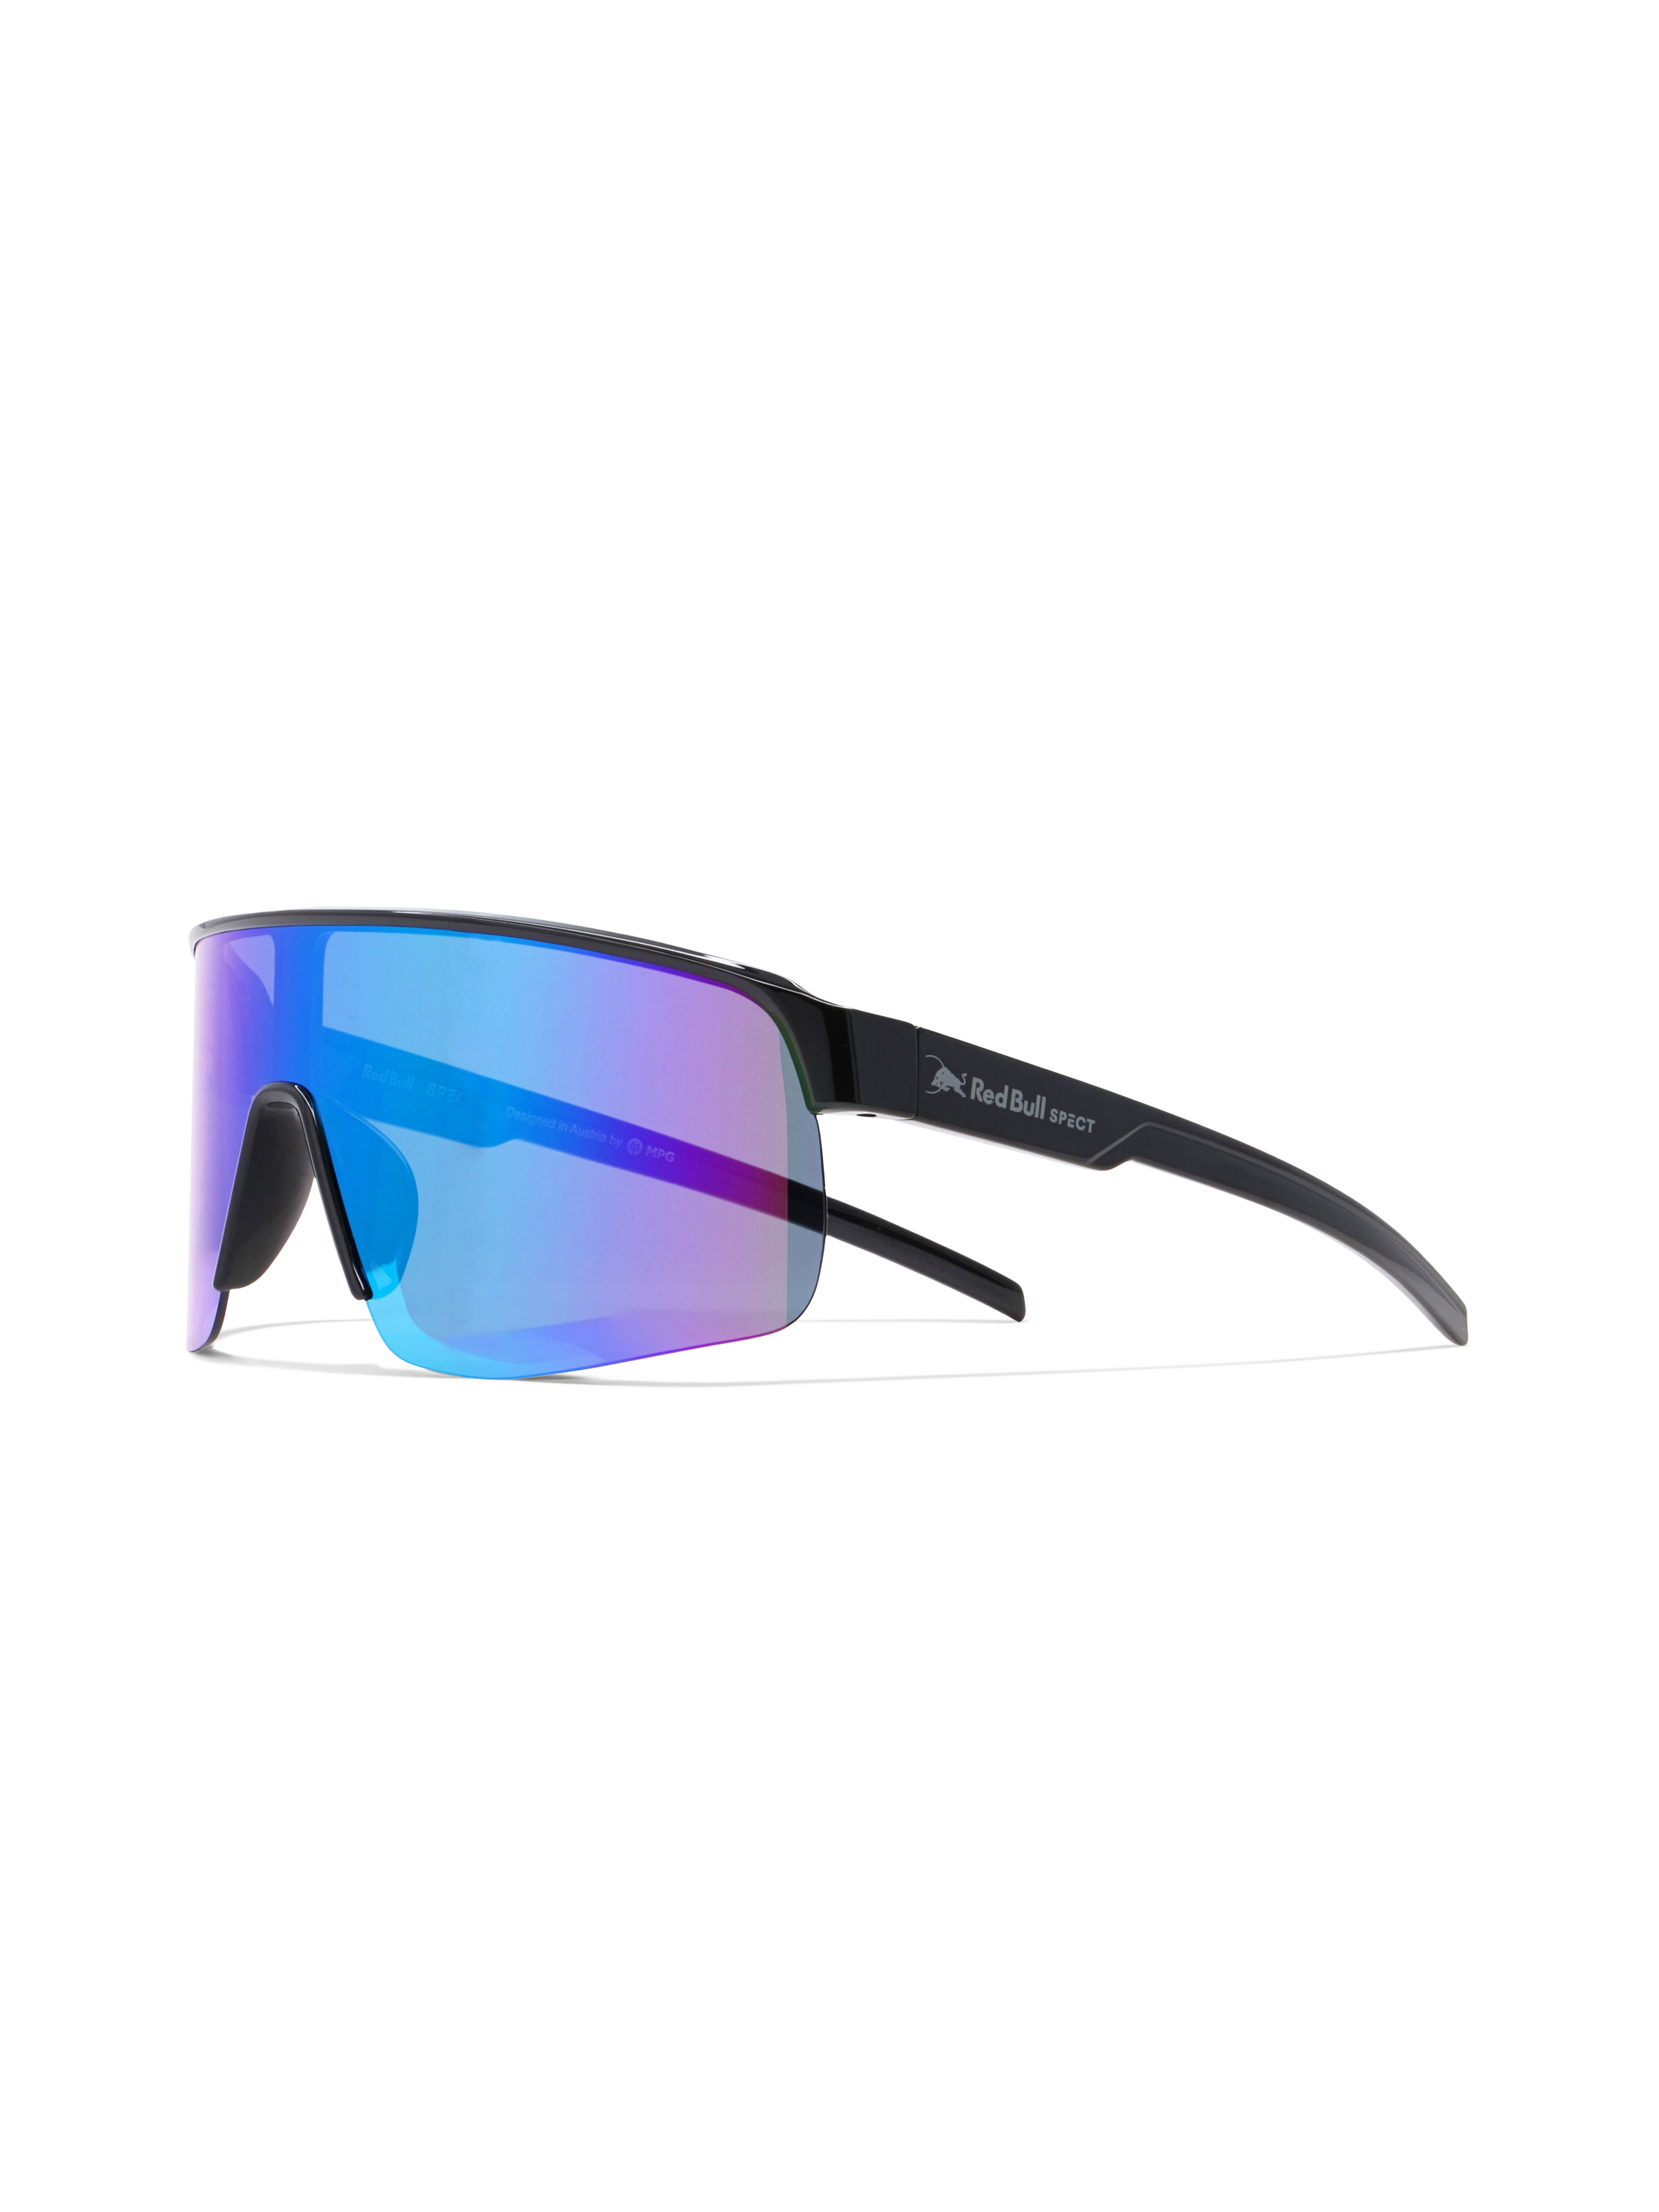 Red Bull SPECT DAKOTA-008 Sunglasses